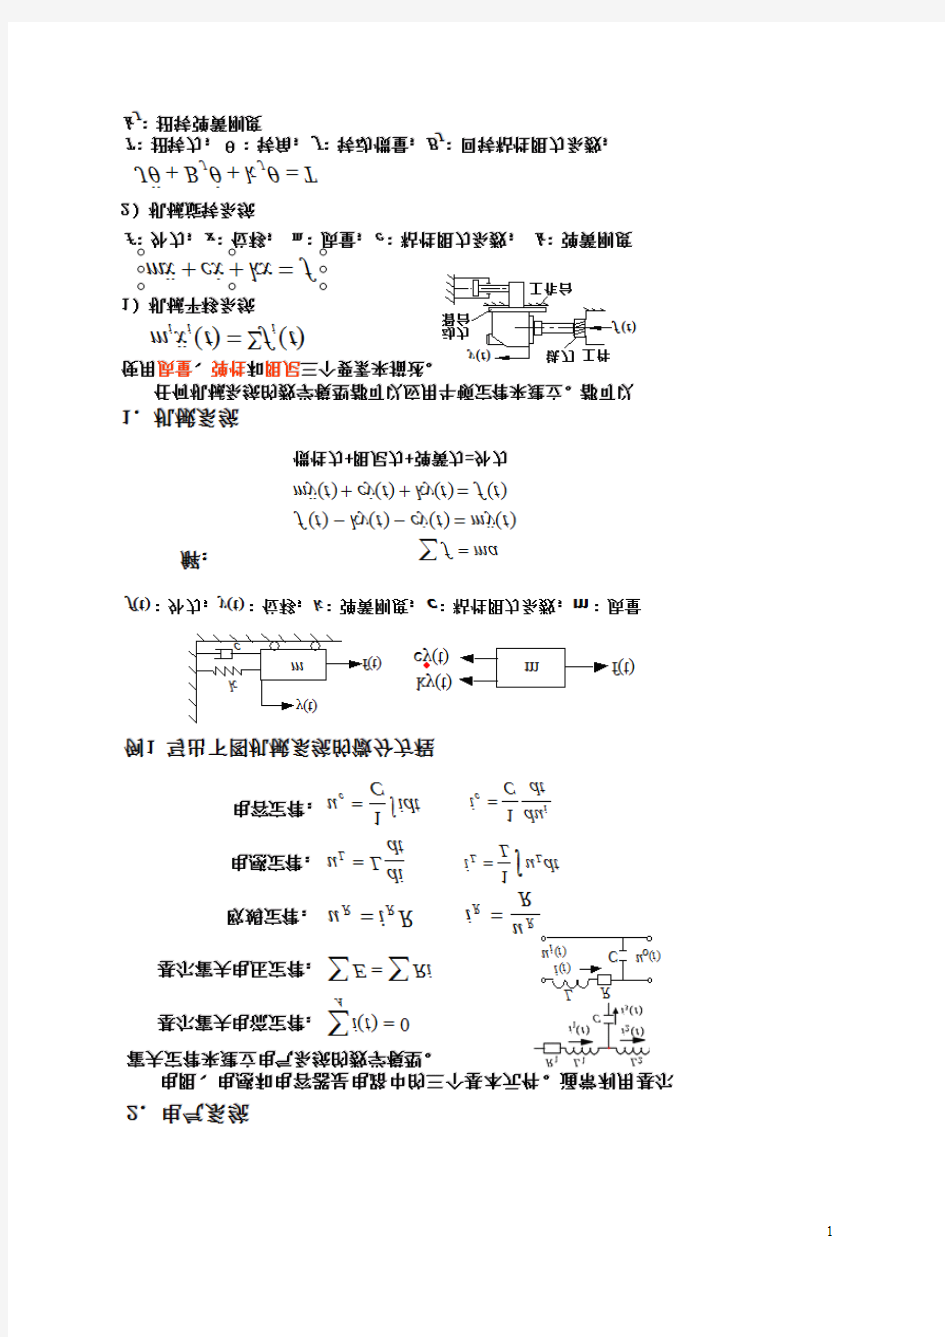 机械控制工程基础 重点知识点总结 典型例题 重庆大学